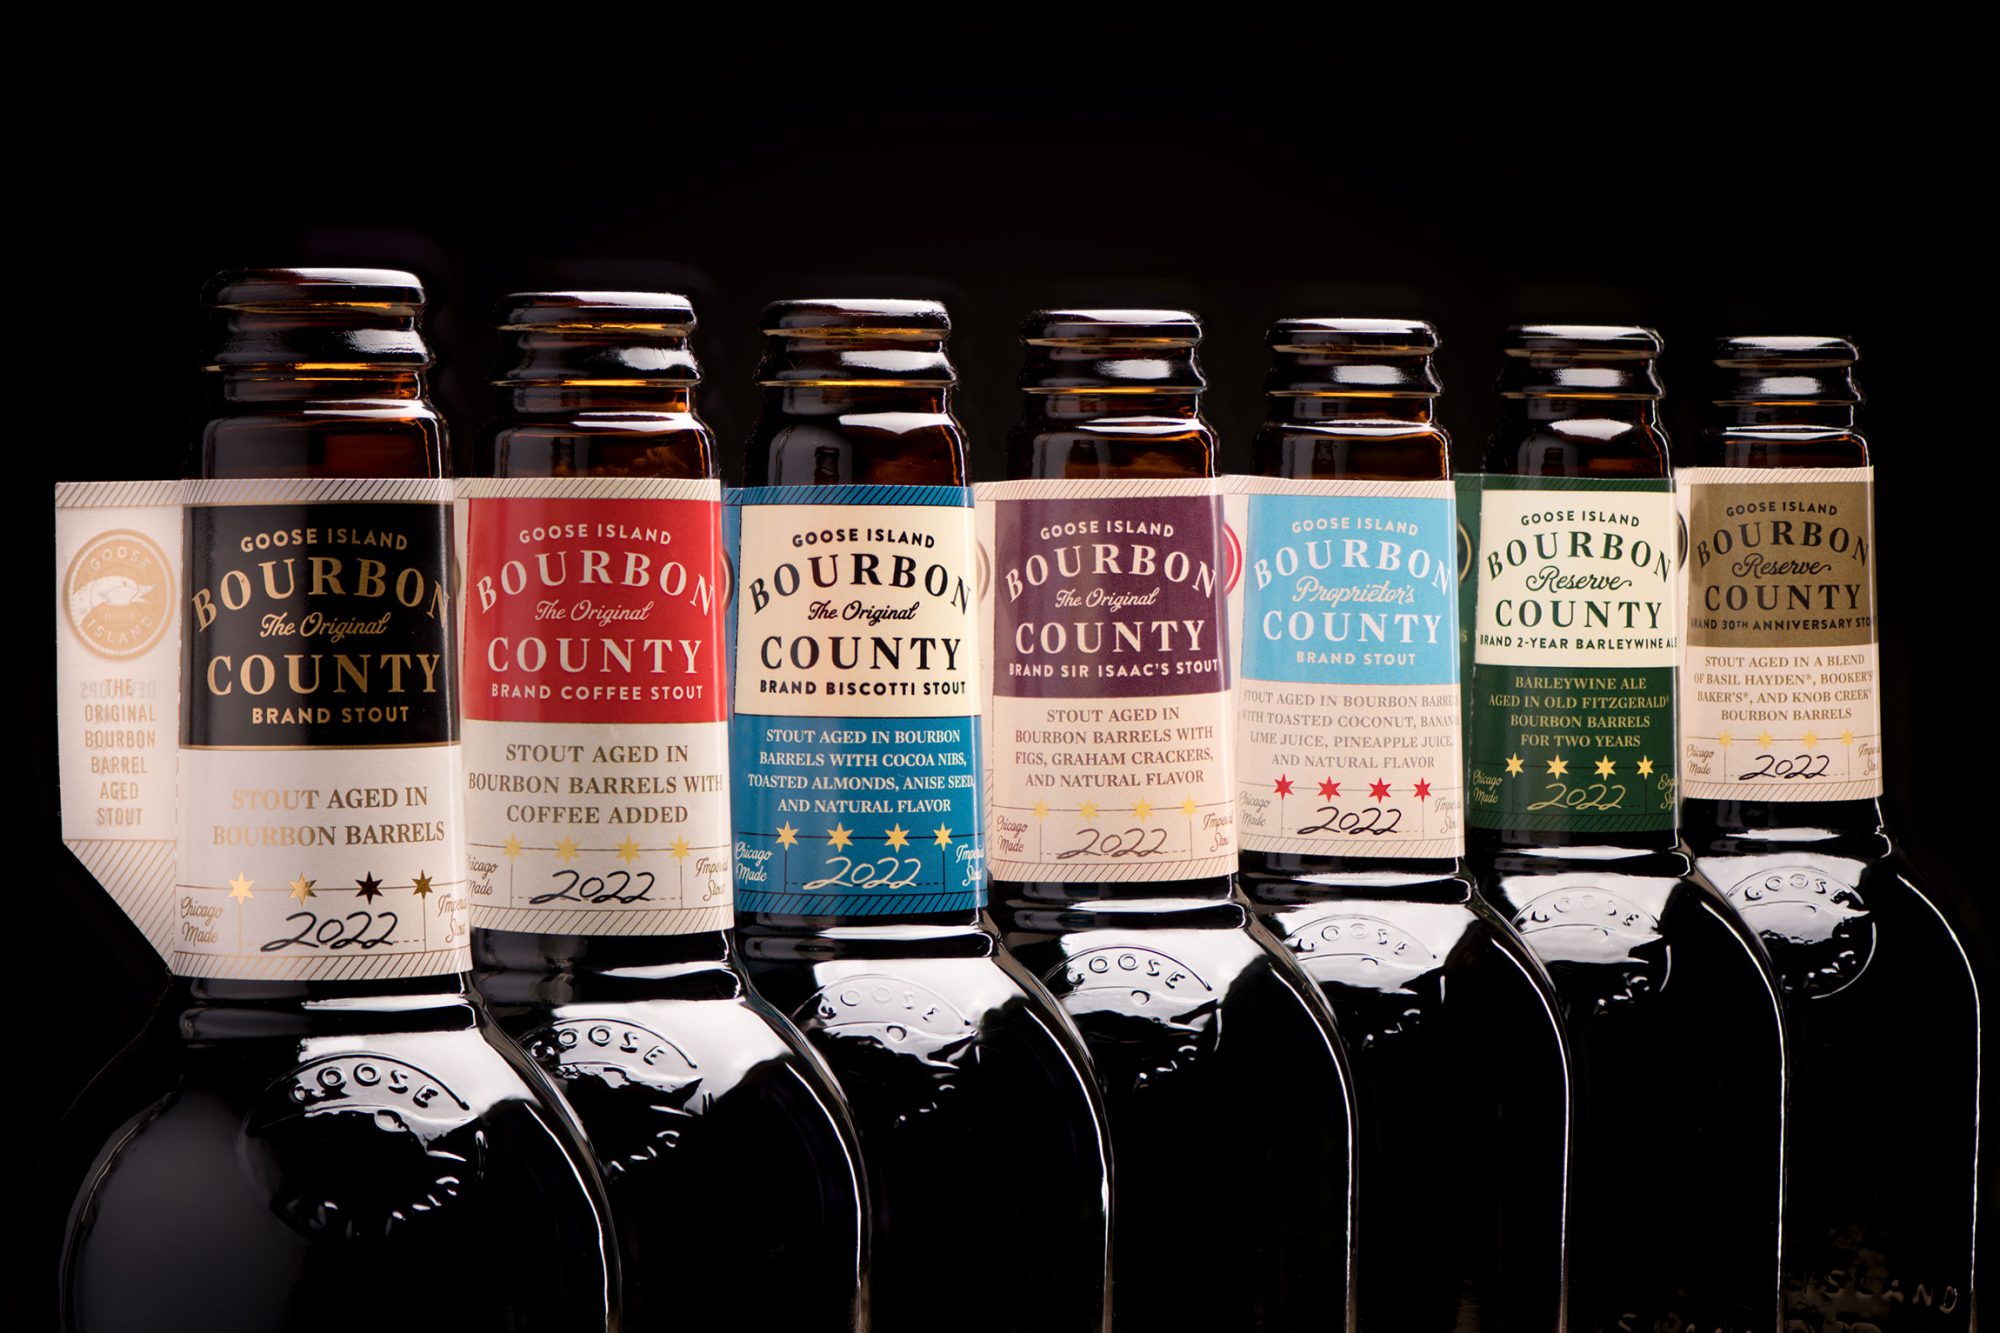 Пивоварня Goose Island анонсировала новую линию пива Bourbon County